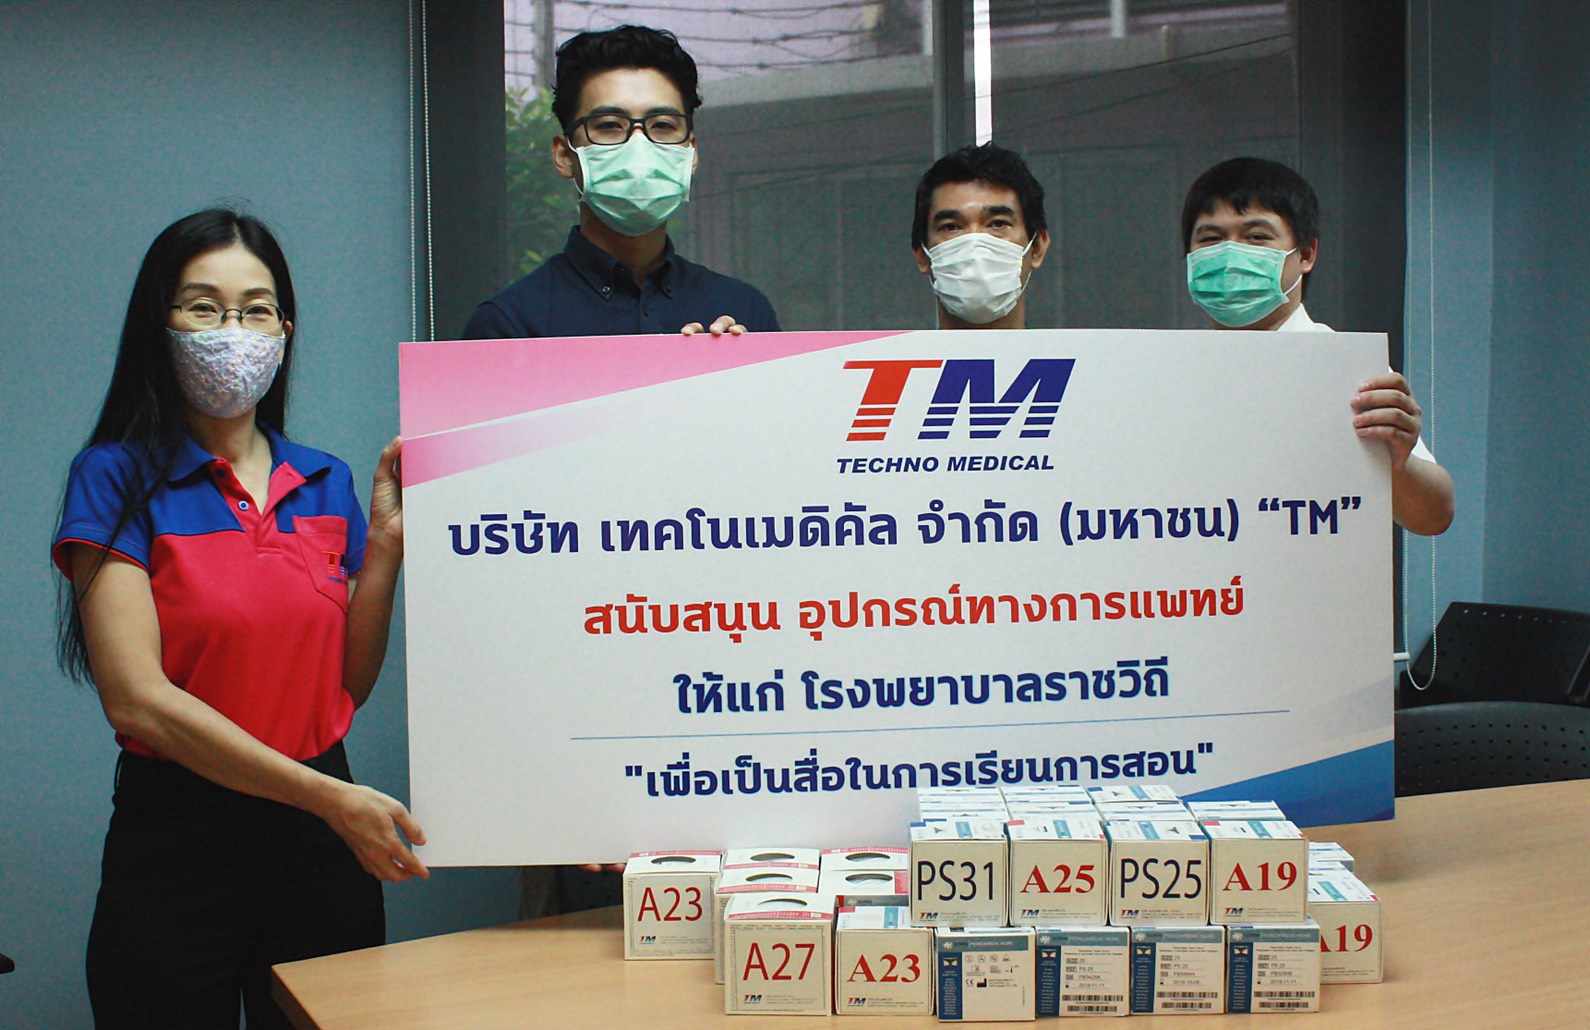 ภาพข่าว: TM สนับสนุนอุปกรณ์ทางการแพทย์ โรงพยาบาลราชวิถี